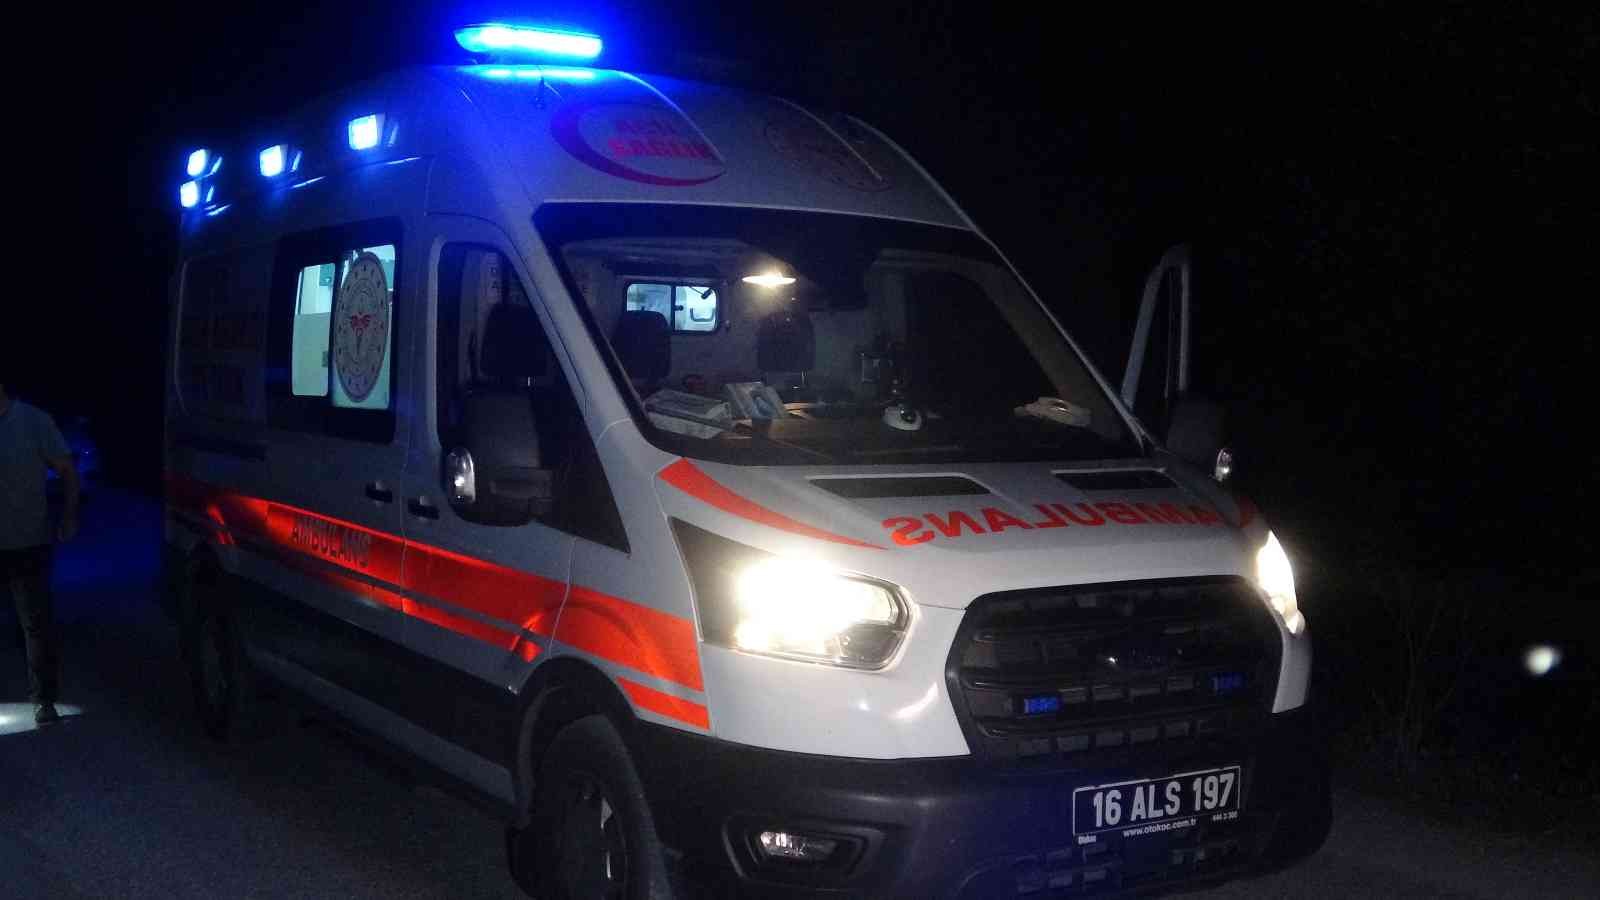 Bursa’da silahla vurulan kişiyi, vatandaş yaralı buldu